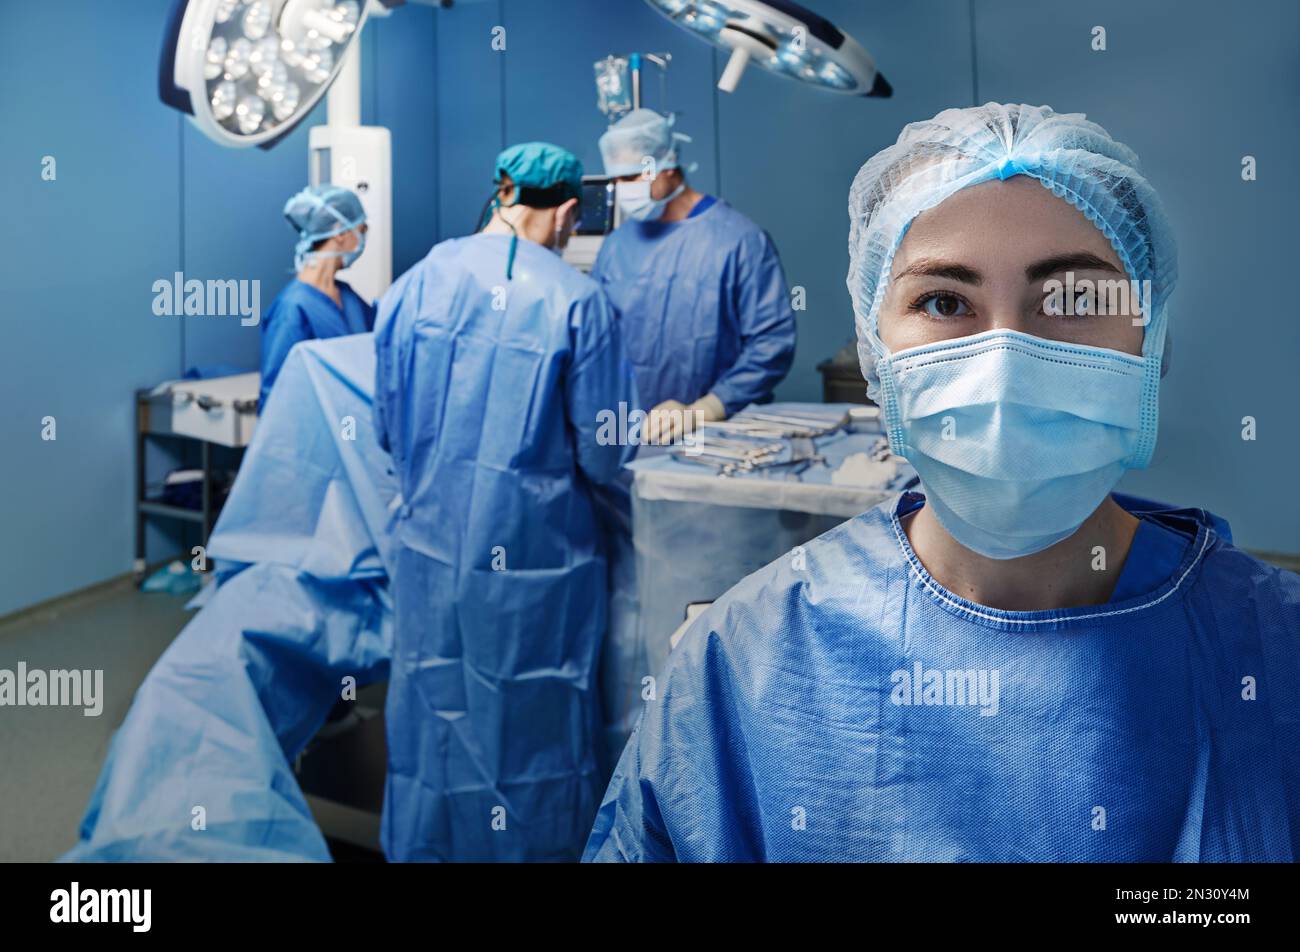 Operationskrankenschwester. Portrait der chirurgischen Krankenschwester trägt medizinische Peeling und Gesichtsschutzmaske über Hintergrund Operationsraum mit Operationspersonal Stockfoto